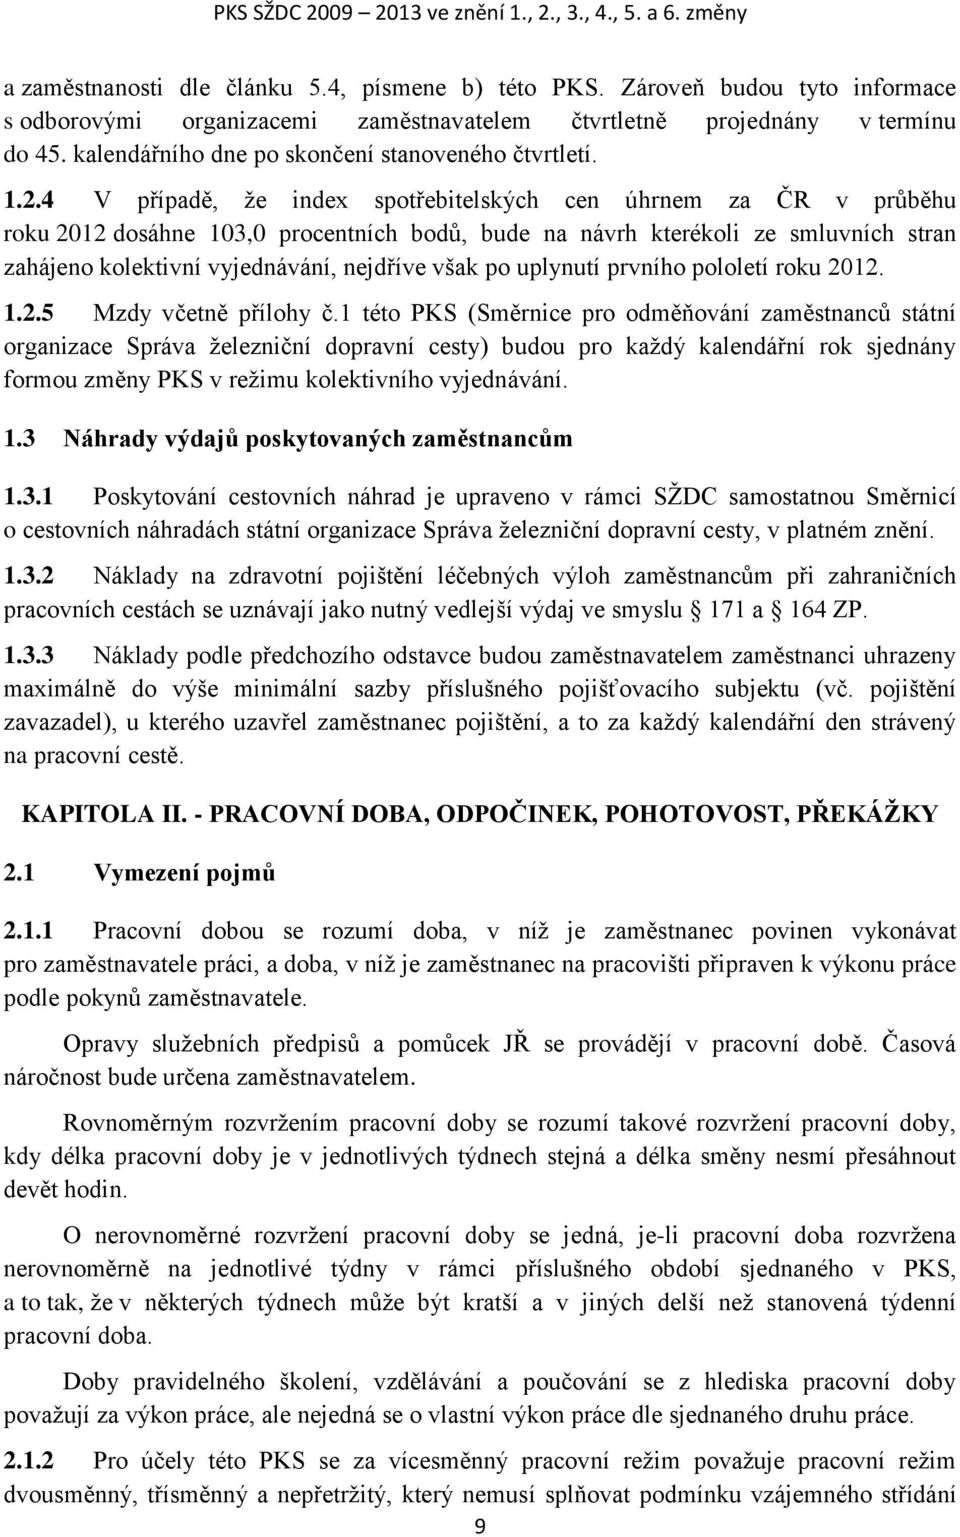 4 V případě, že index spotřebitelských cen úhrnem za ČR v průběhu roku 2012 dosáhne 103,0 procentních bodů, bude na návrh kterékoli ze smluvních stran zahájeno kolektivní vyjednávání, nejdříve však